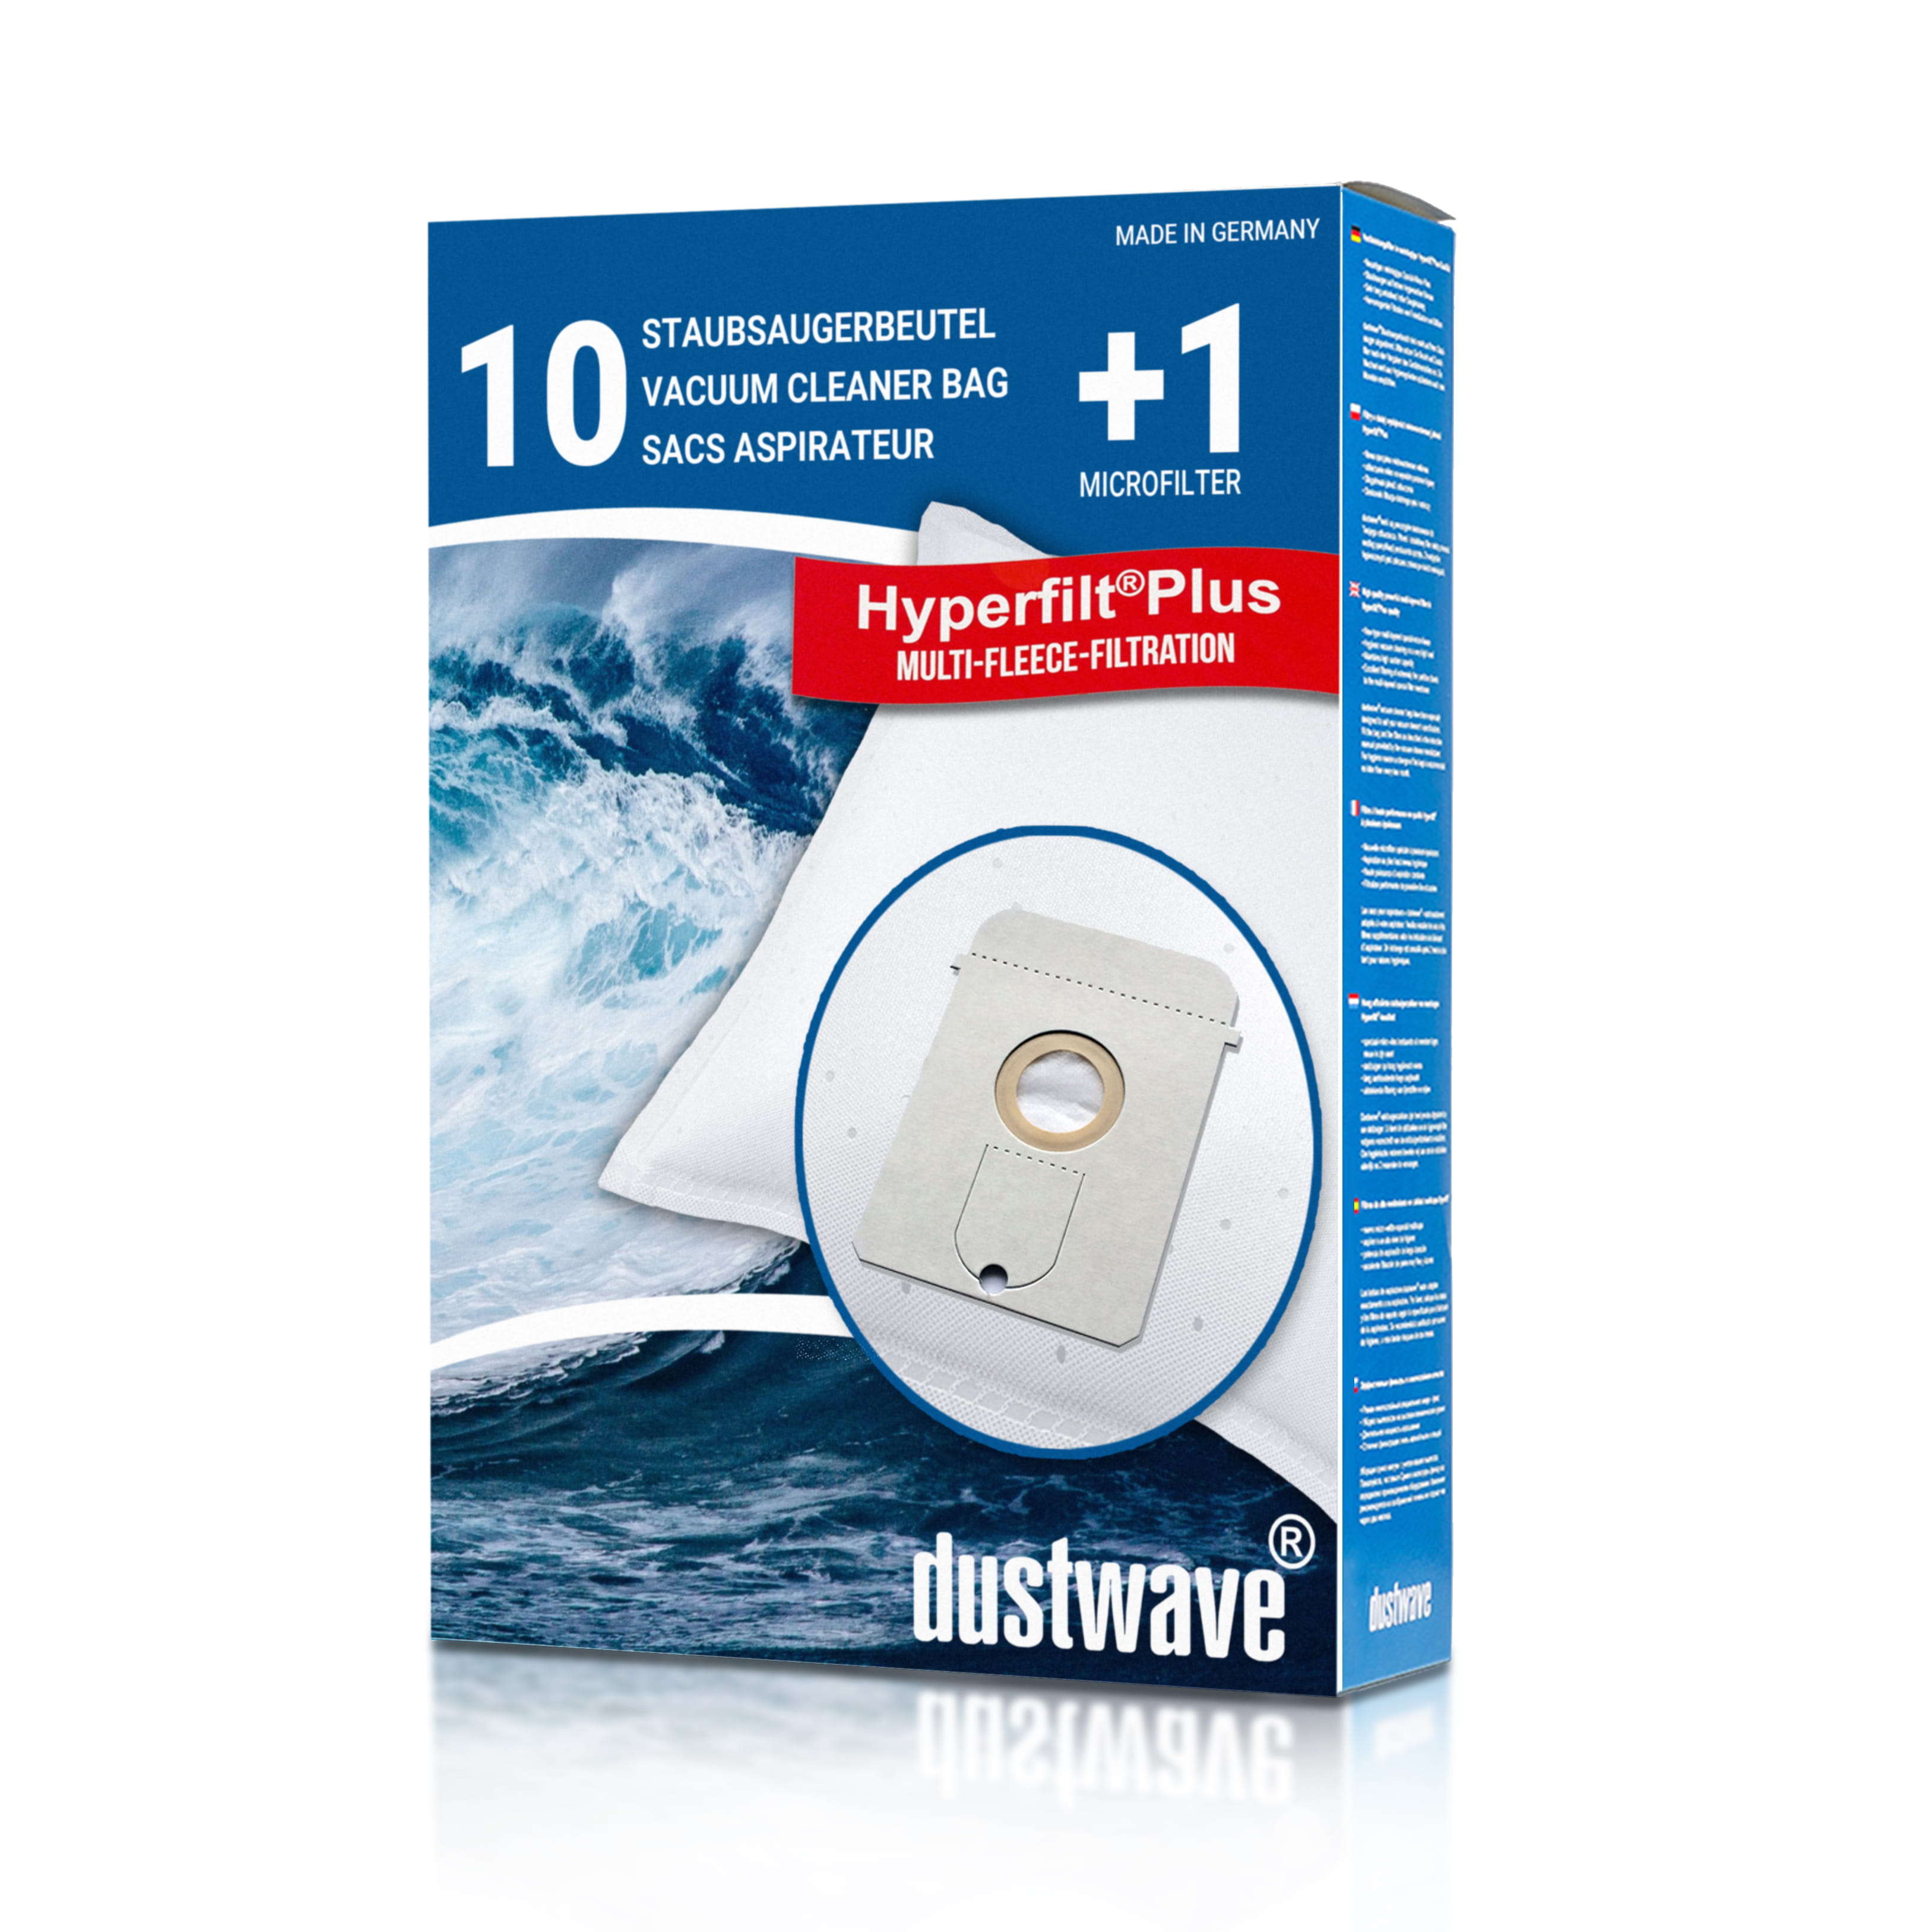 Dustwave® 10 Staubsaugerbeutel für AEG Vampyr 6200 Electronic - hocheffizient, mehrlagiges Mikrovlies mit Hygieneverschluss - Made in Germany